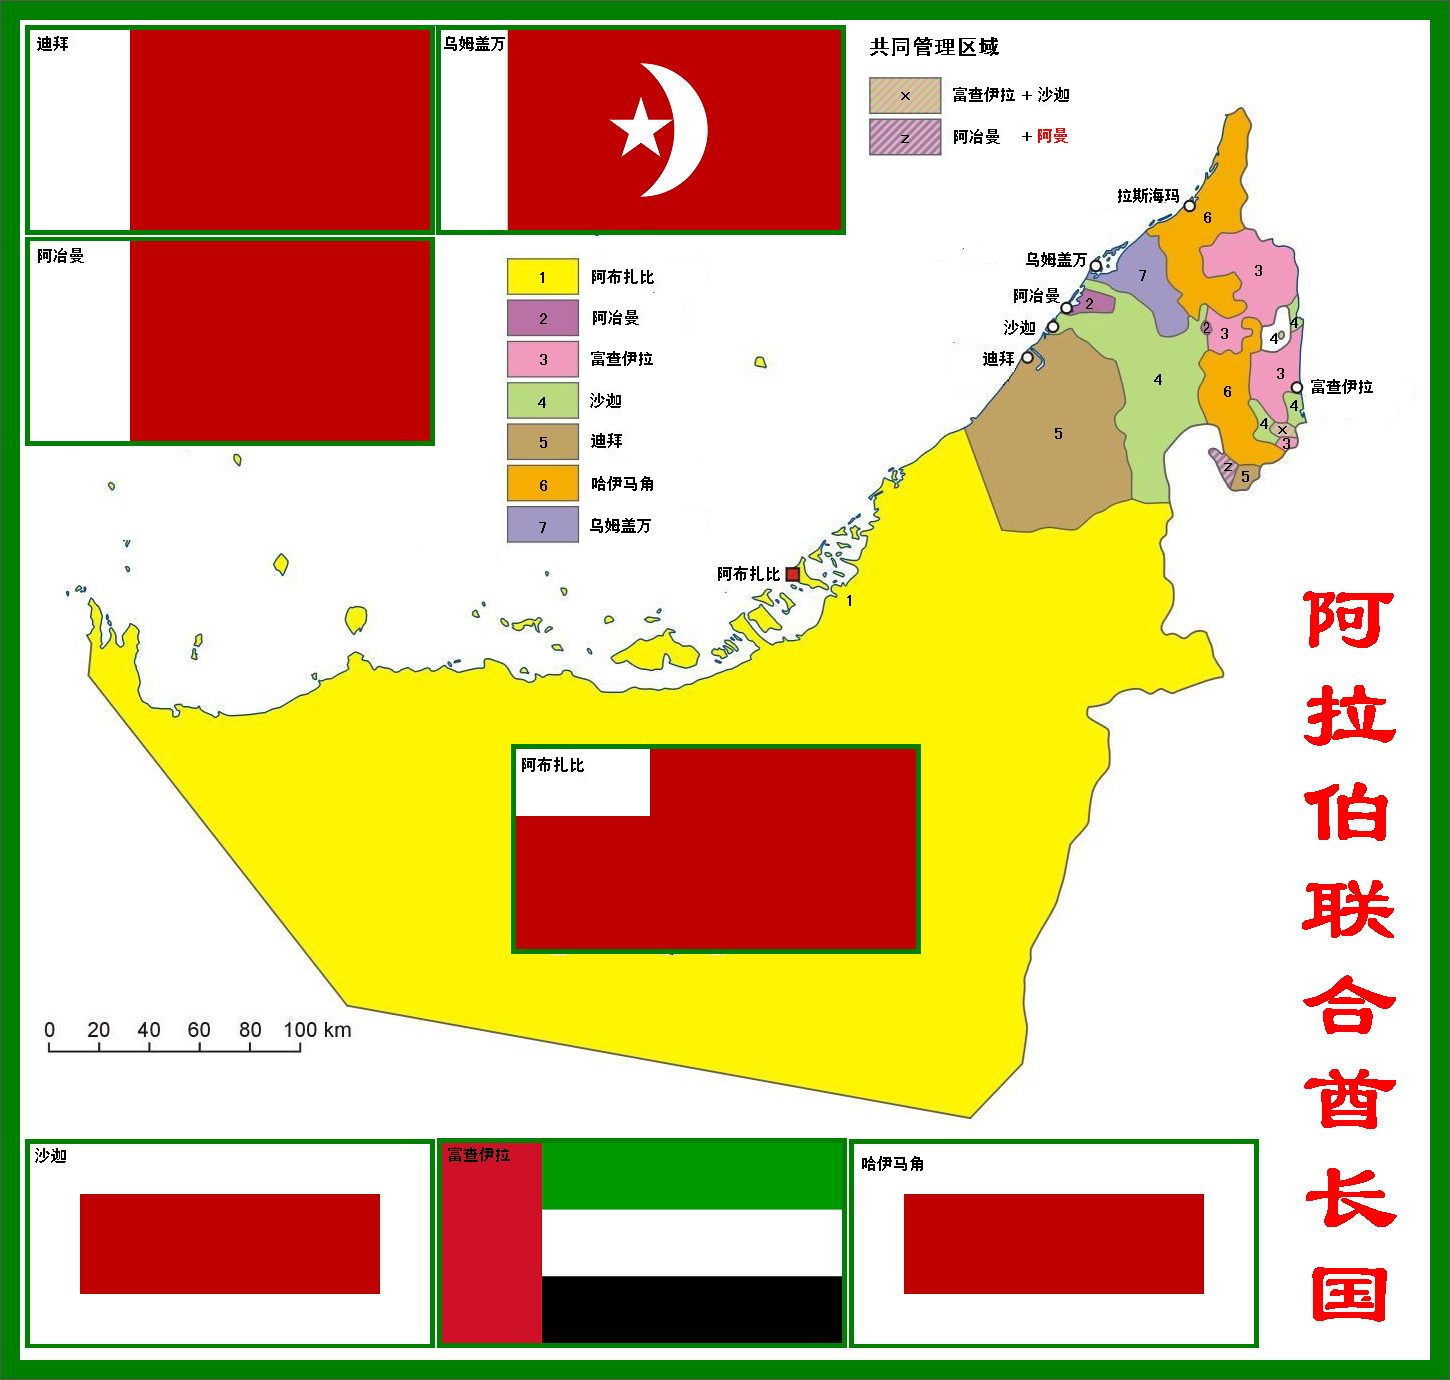 阿联酋宣布未来50年的发展计划 - 海湾资讯网-gulfinfo.ae - 中东资讯|海湾资讯|中东国家|中东新闻|迪拜资讯|沙特阿拉伯|伊拉克库尔德|阿联酋新闻|迪拜旅游|中东旅游|经济信息